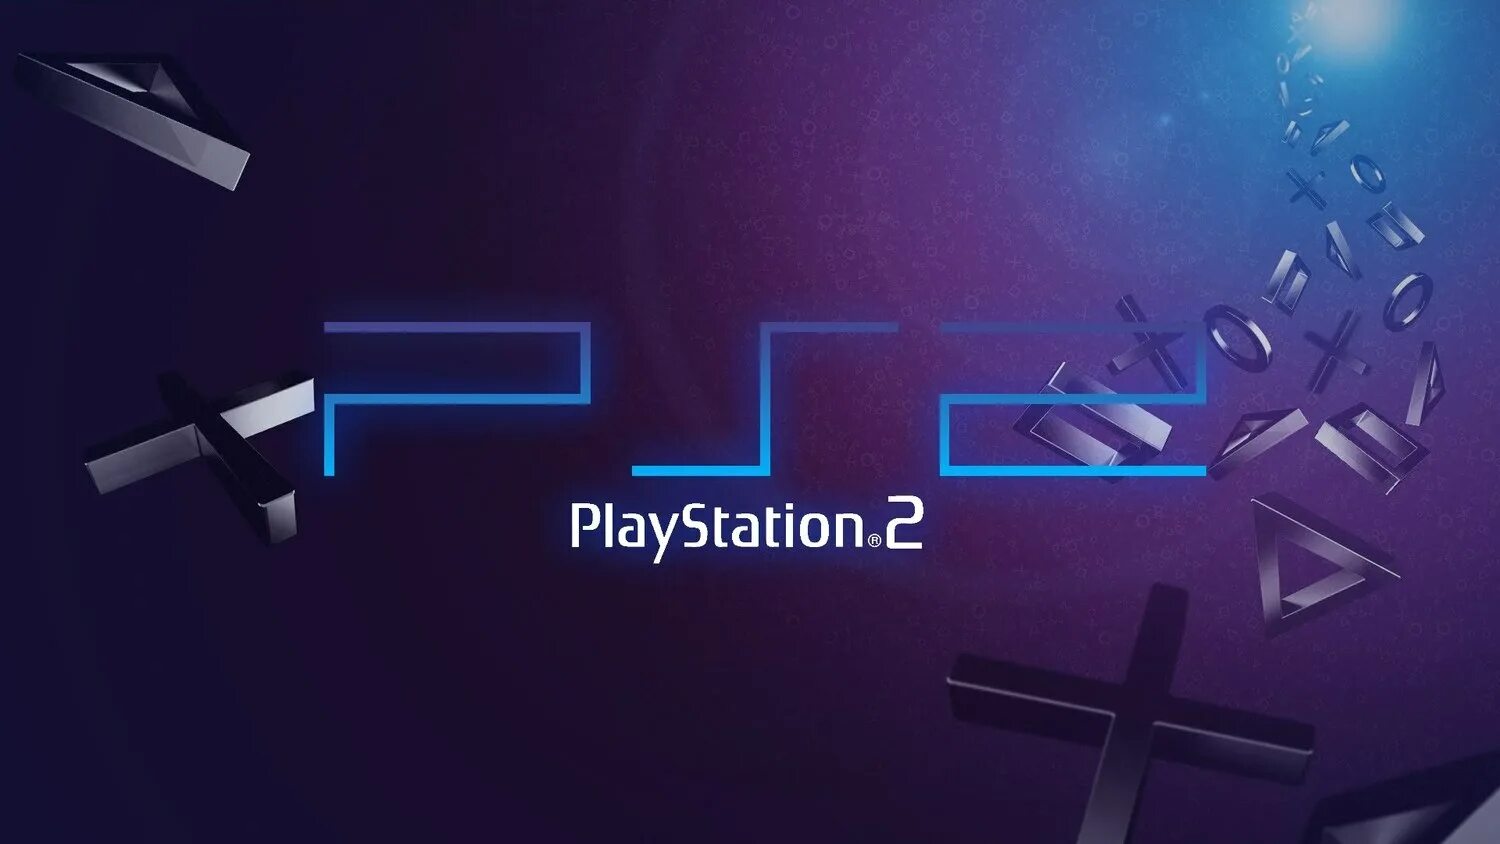 Sony PLAYSTATION логотип ПС 2. PLAYSTATION заставка. PLAYSTATION надпись. PLAYSTATION 2 заставка. Ps net